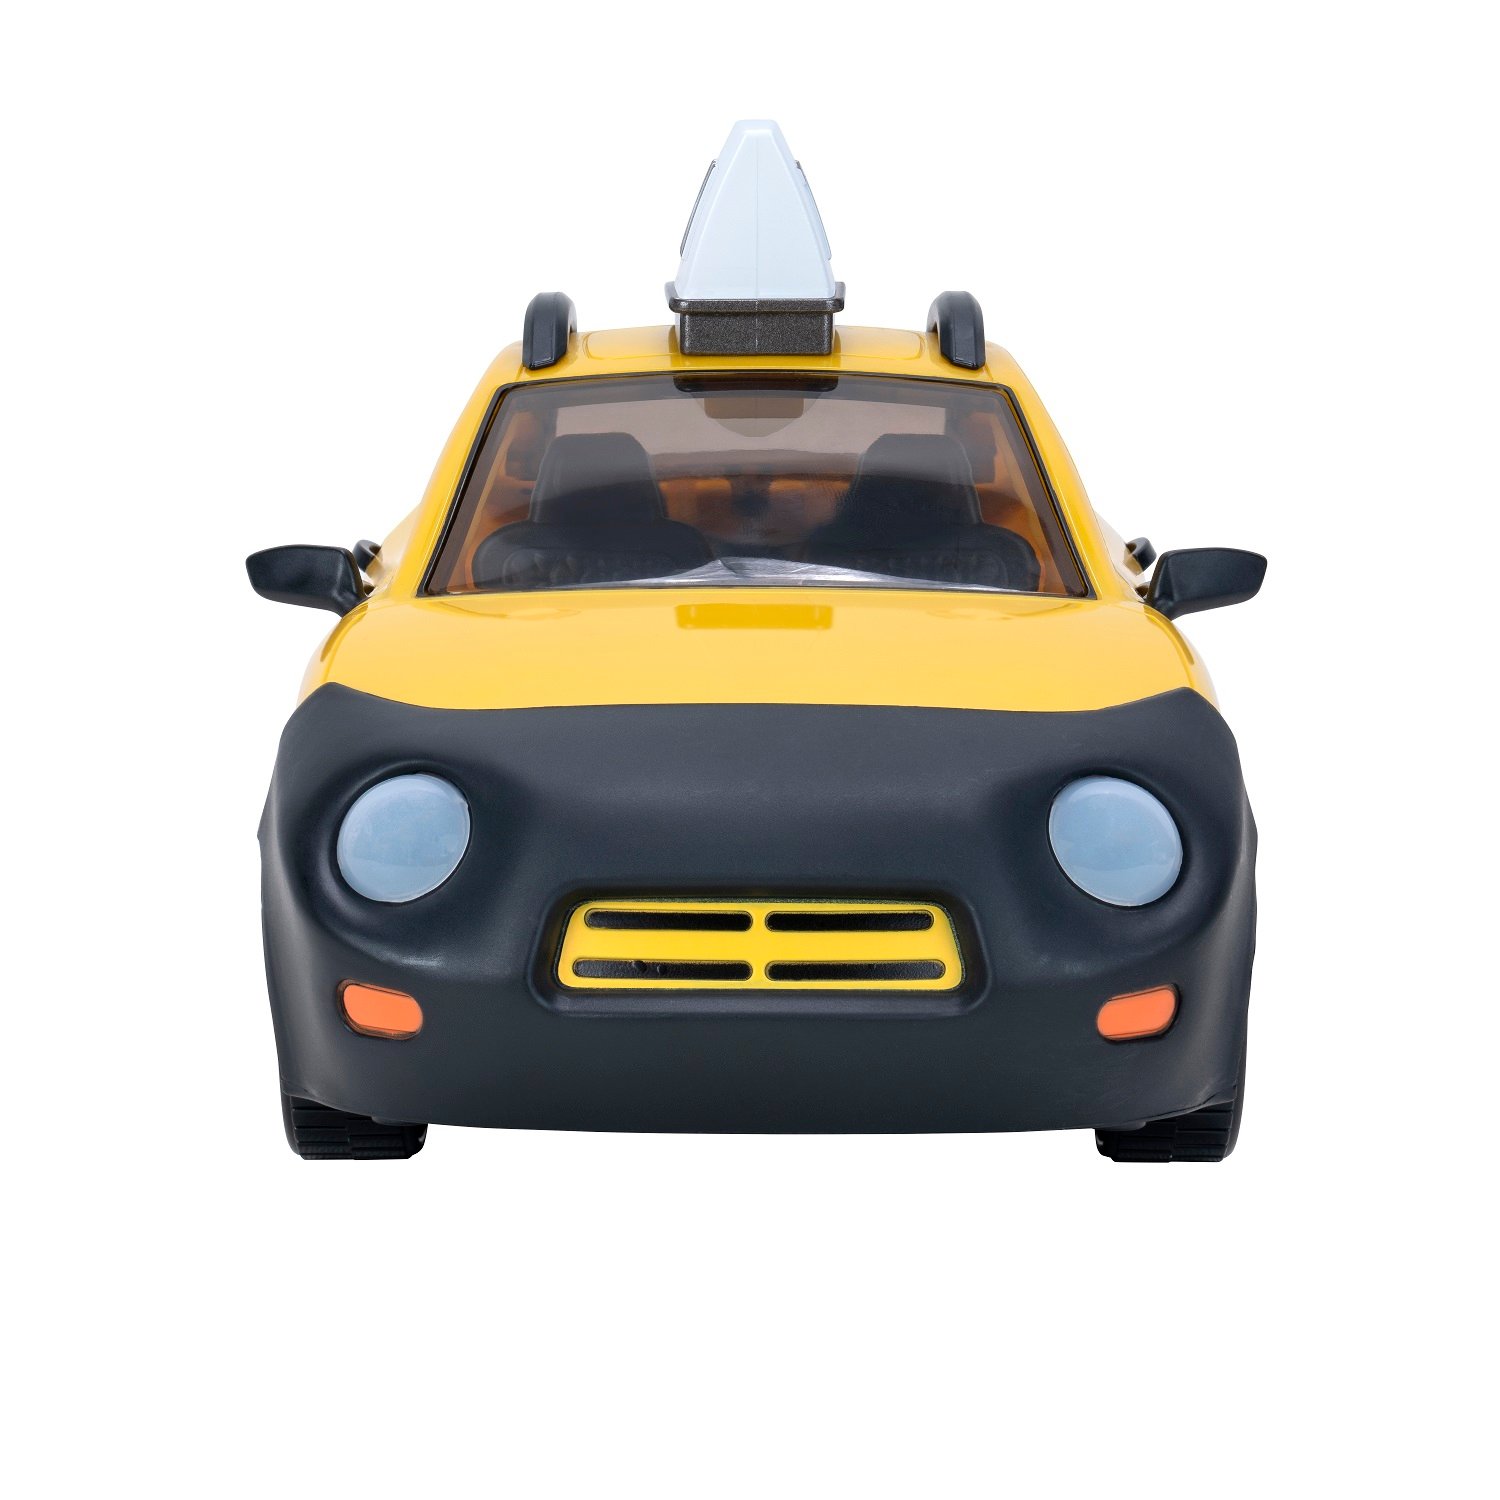 Ігровий набір Jazwares Fortnite Joy Ride Vehicle Taxi Cab, автомобіль і фігурка (FNT0817) - фото 9